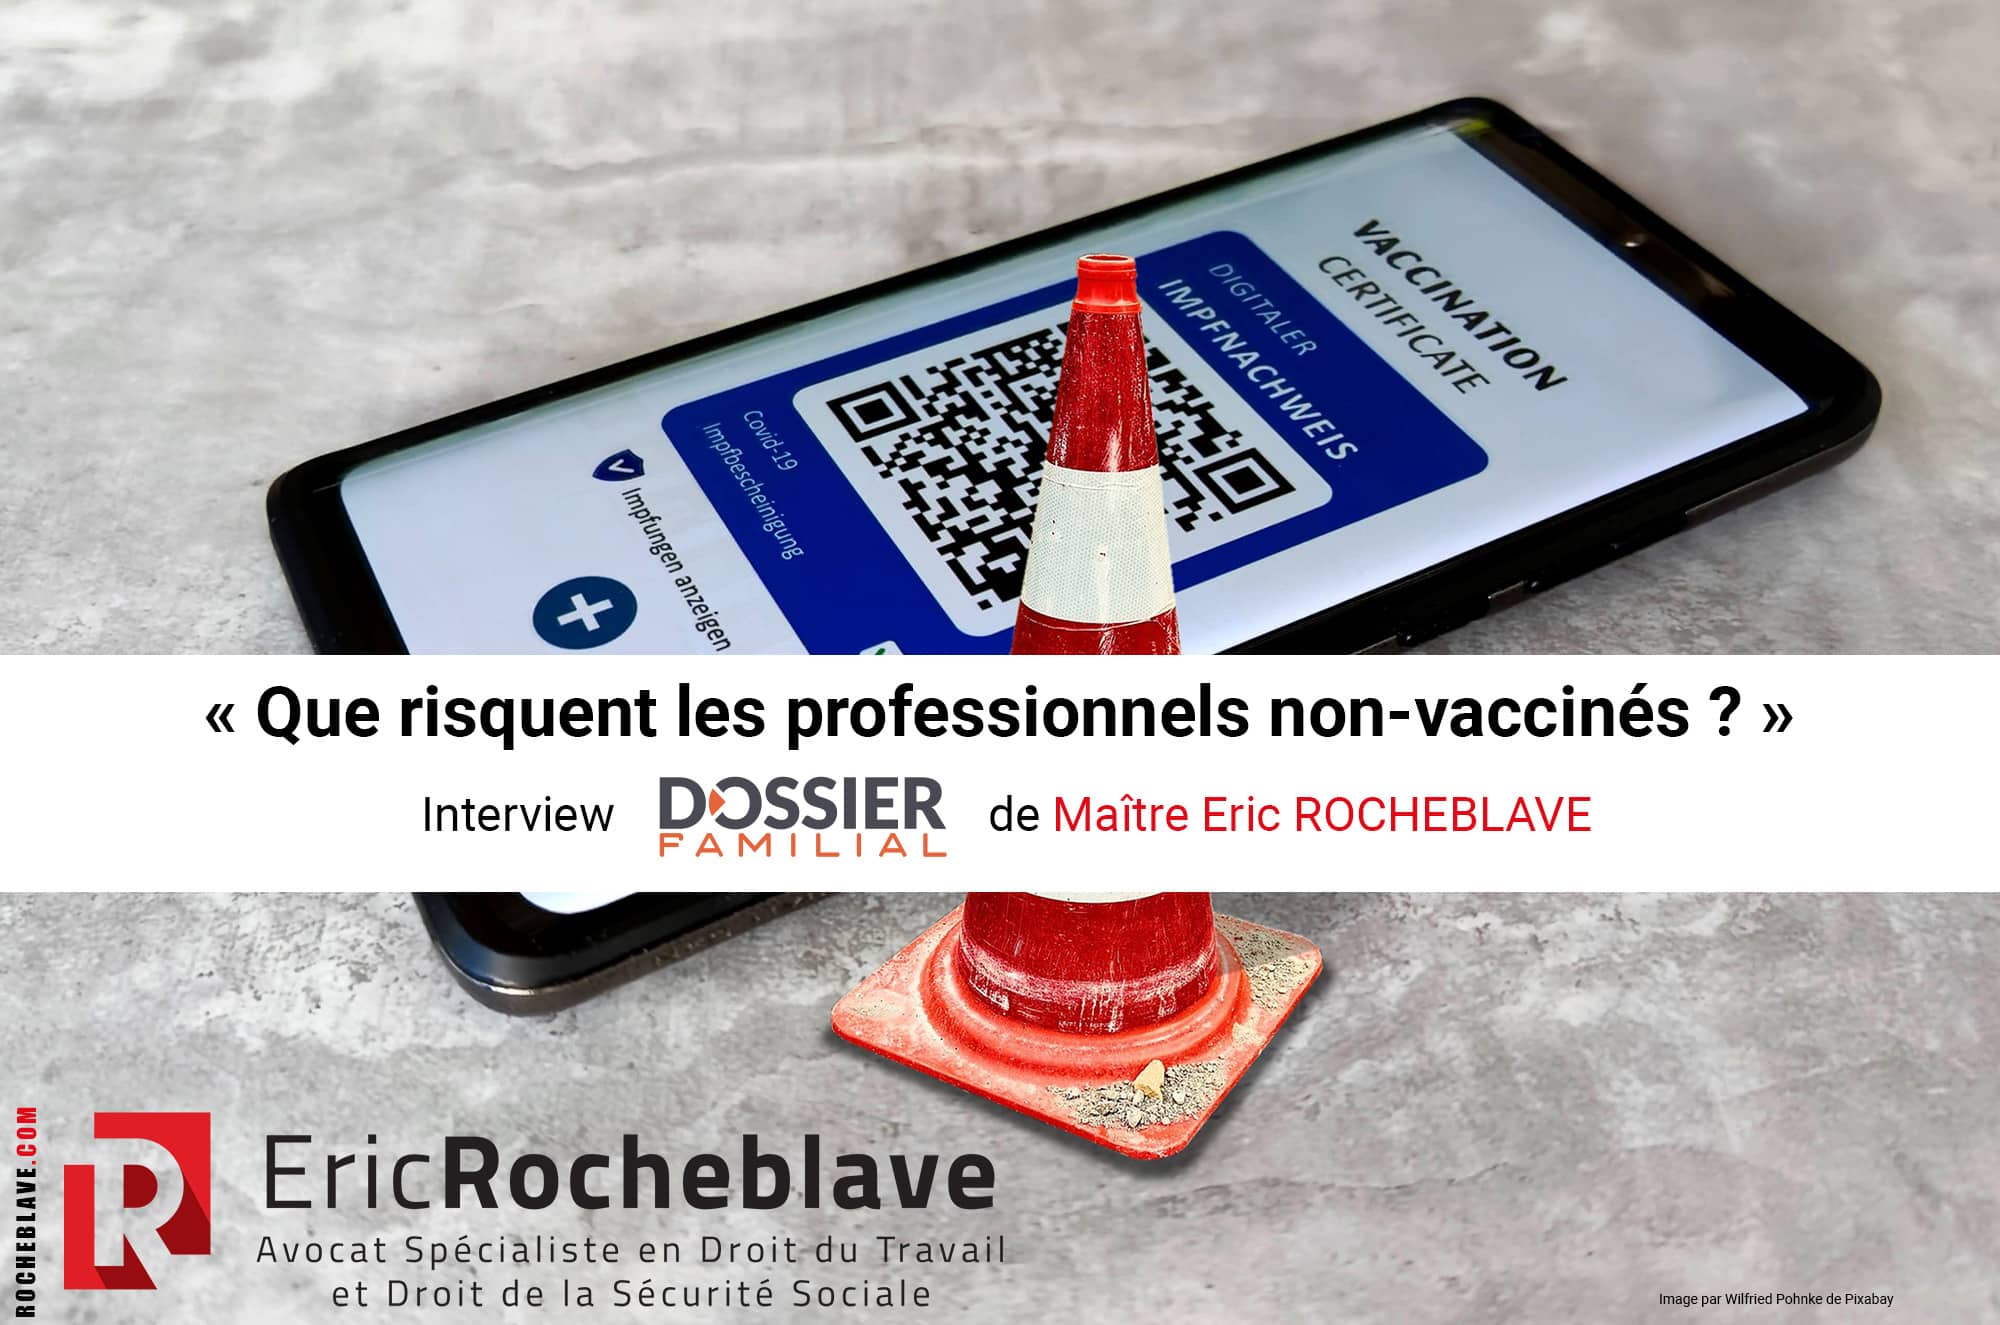 « Que risquent les professionnels non-vaccinés ? » Interview DOSSIER FAMILIAL de Maître Eric ROCHEBLAVE